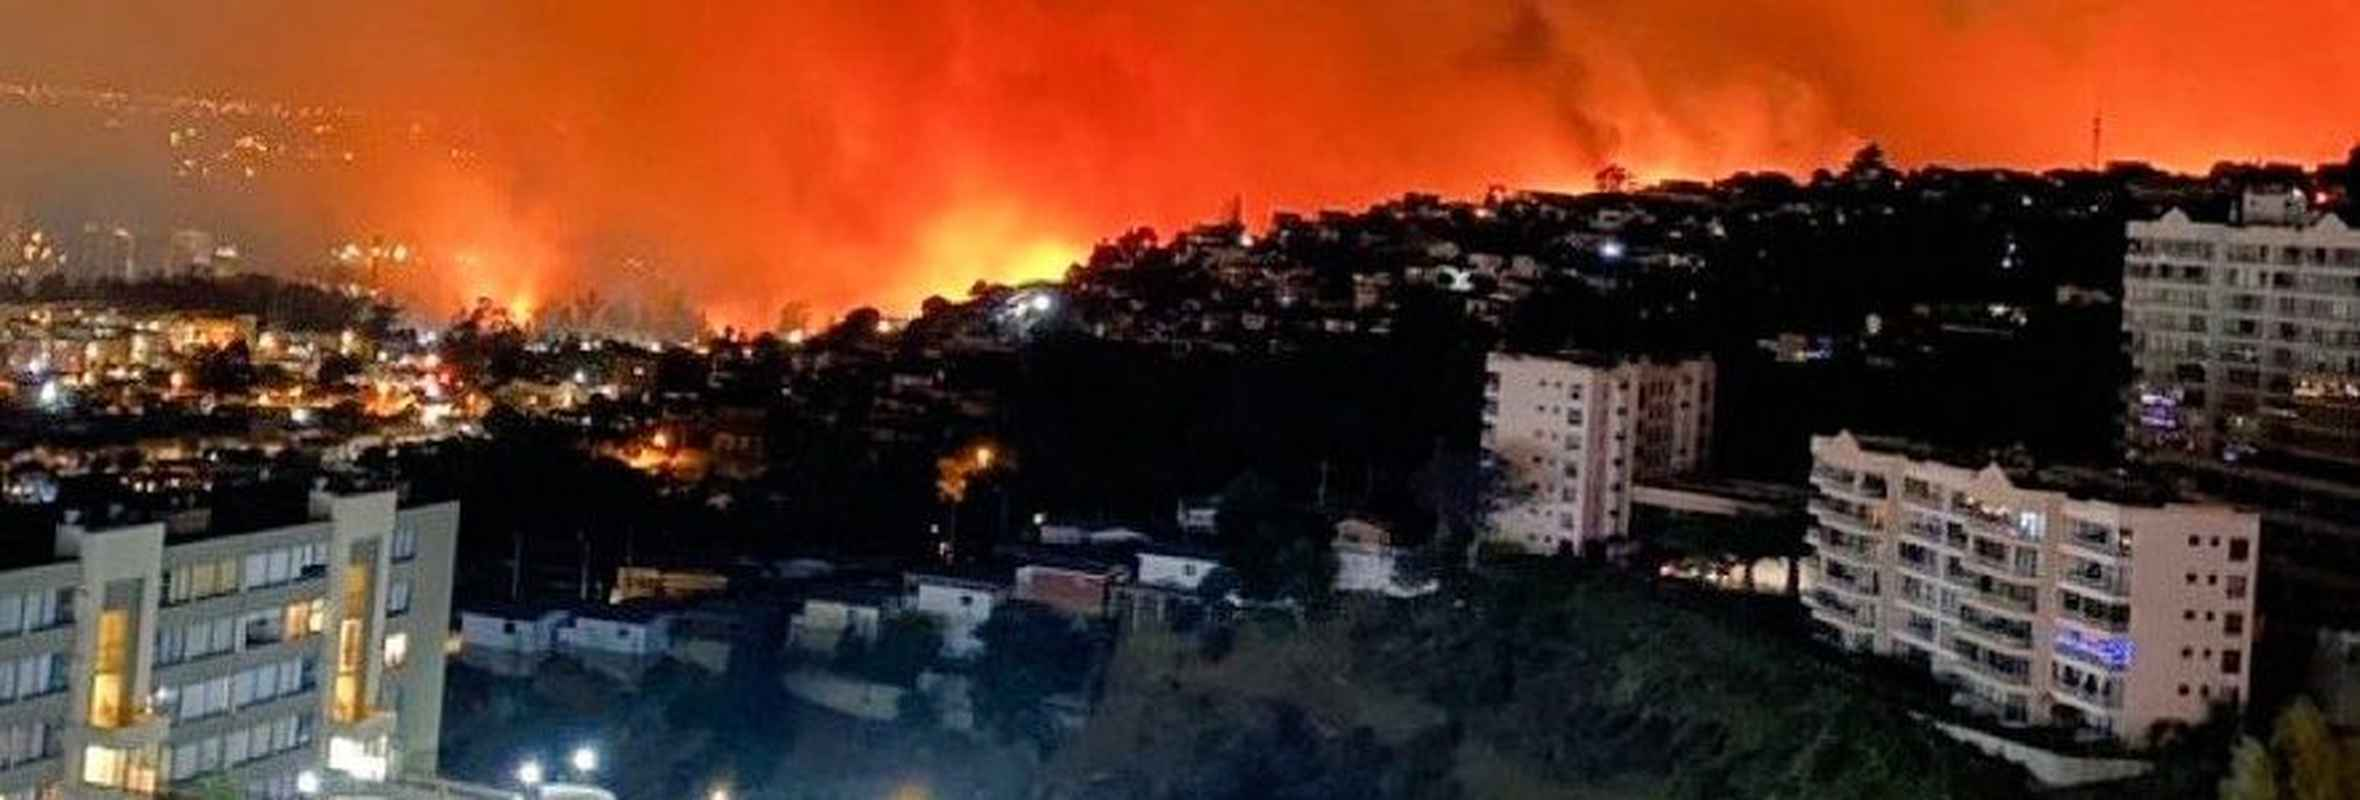 «Después de la emergencia»: Proponen ocho claves para la recuperación sostenible en zonas afectadas por incendios forestales